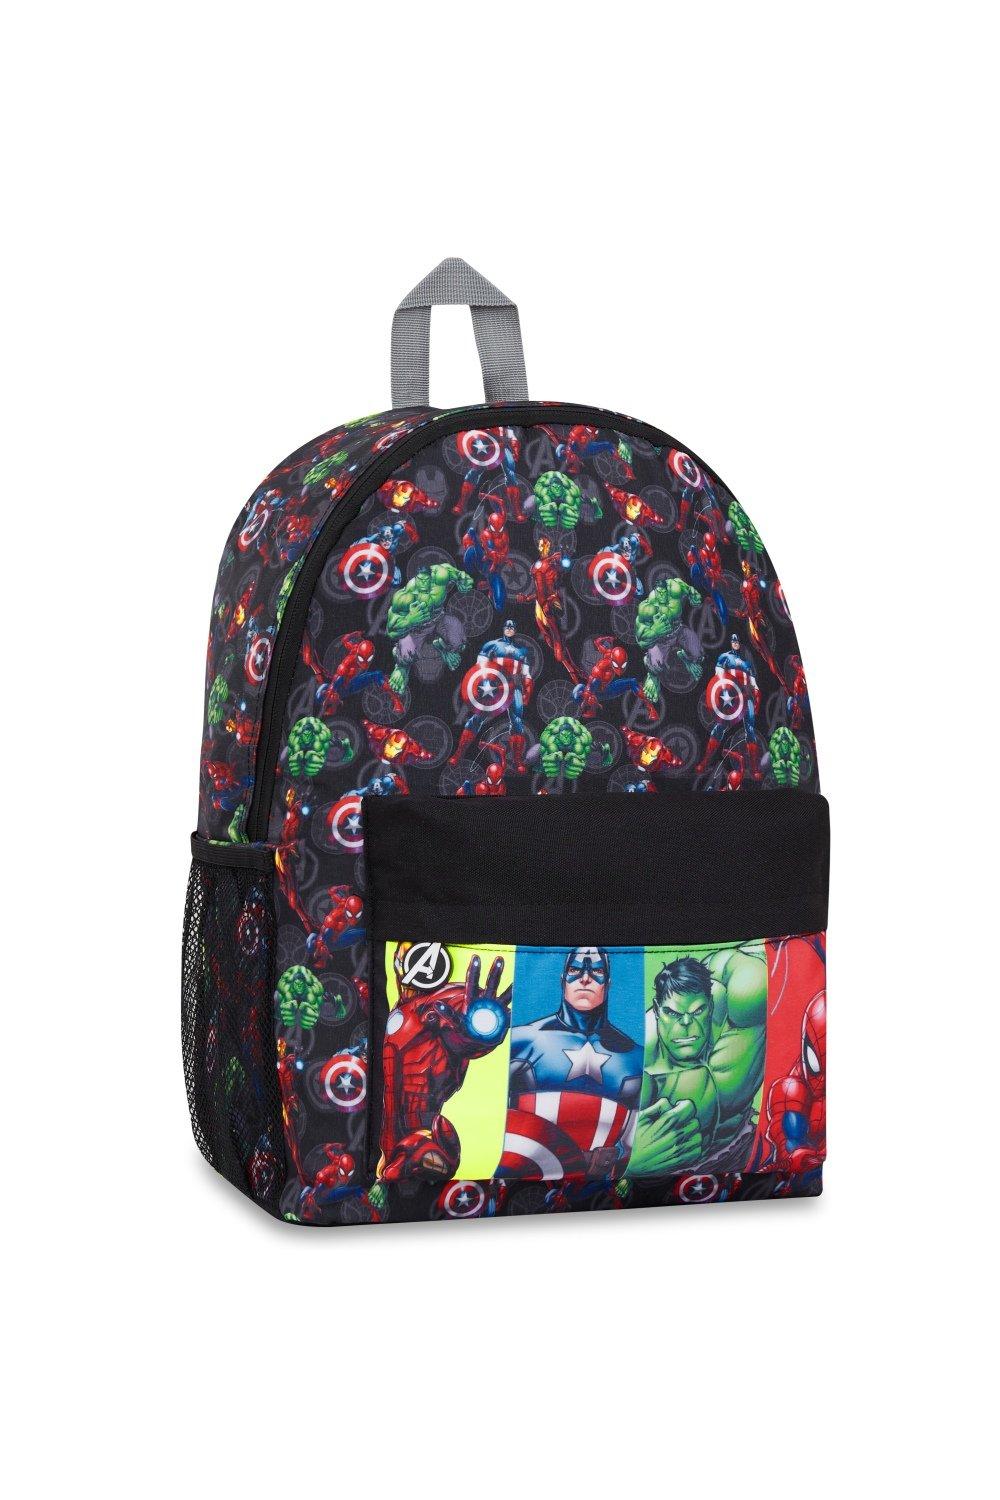 Рюкзак школы Мстителей Marvel, мультиколор 2022 colomb детский школьный рюкзак jananese randoseru для мальчиков ортопедический рюкзак линейный дизайн детский роскошный школьный рюкзак mochila